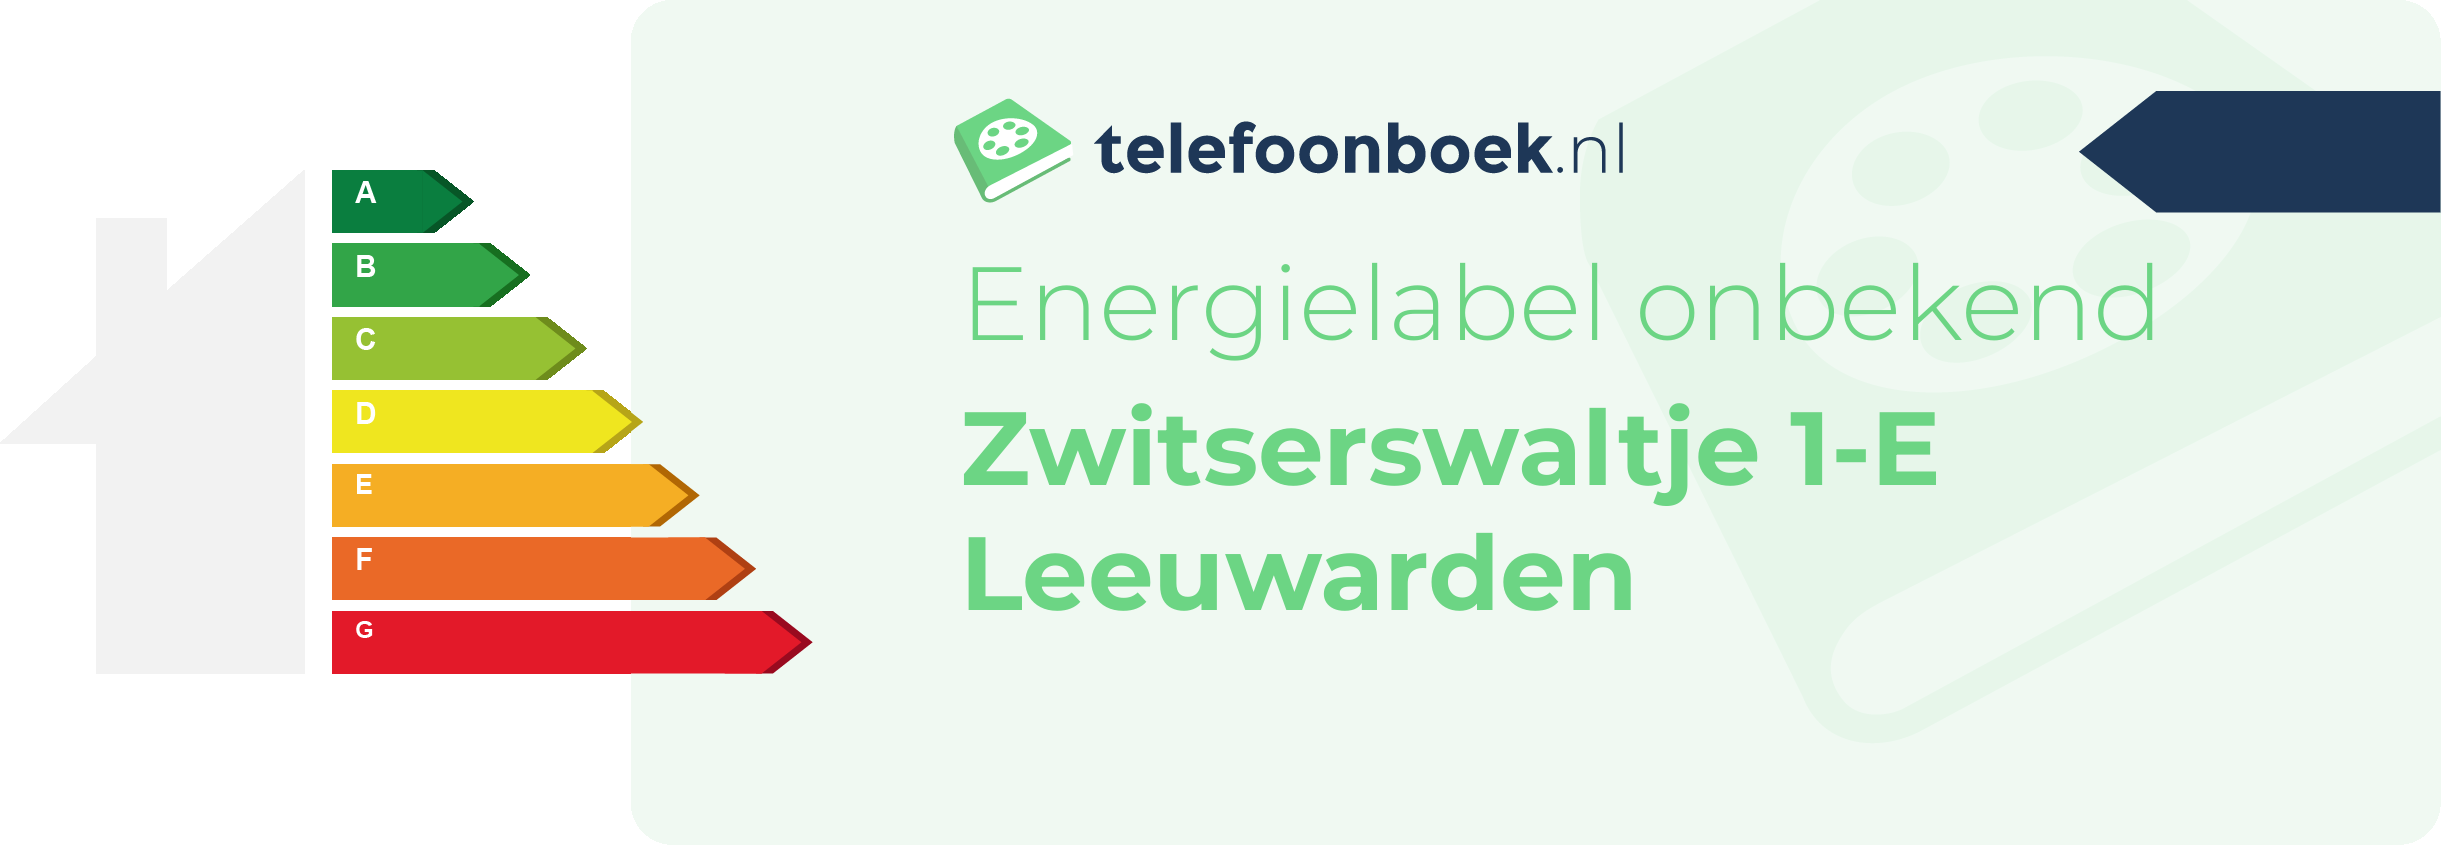 Energielabel Zwitserswaltje 1-E Leeuwarden